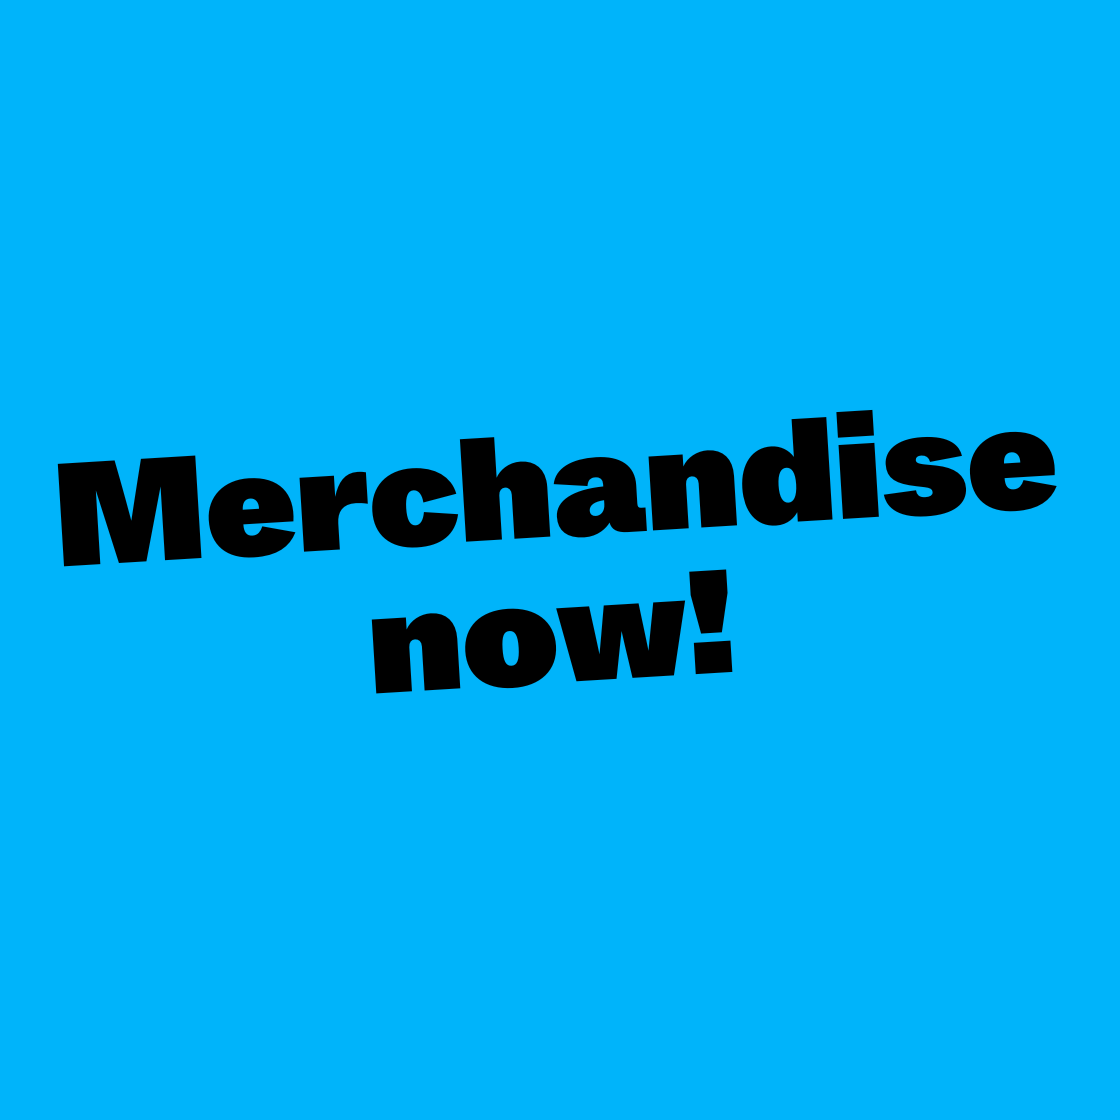 Merchandise now!